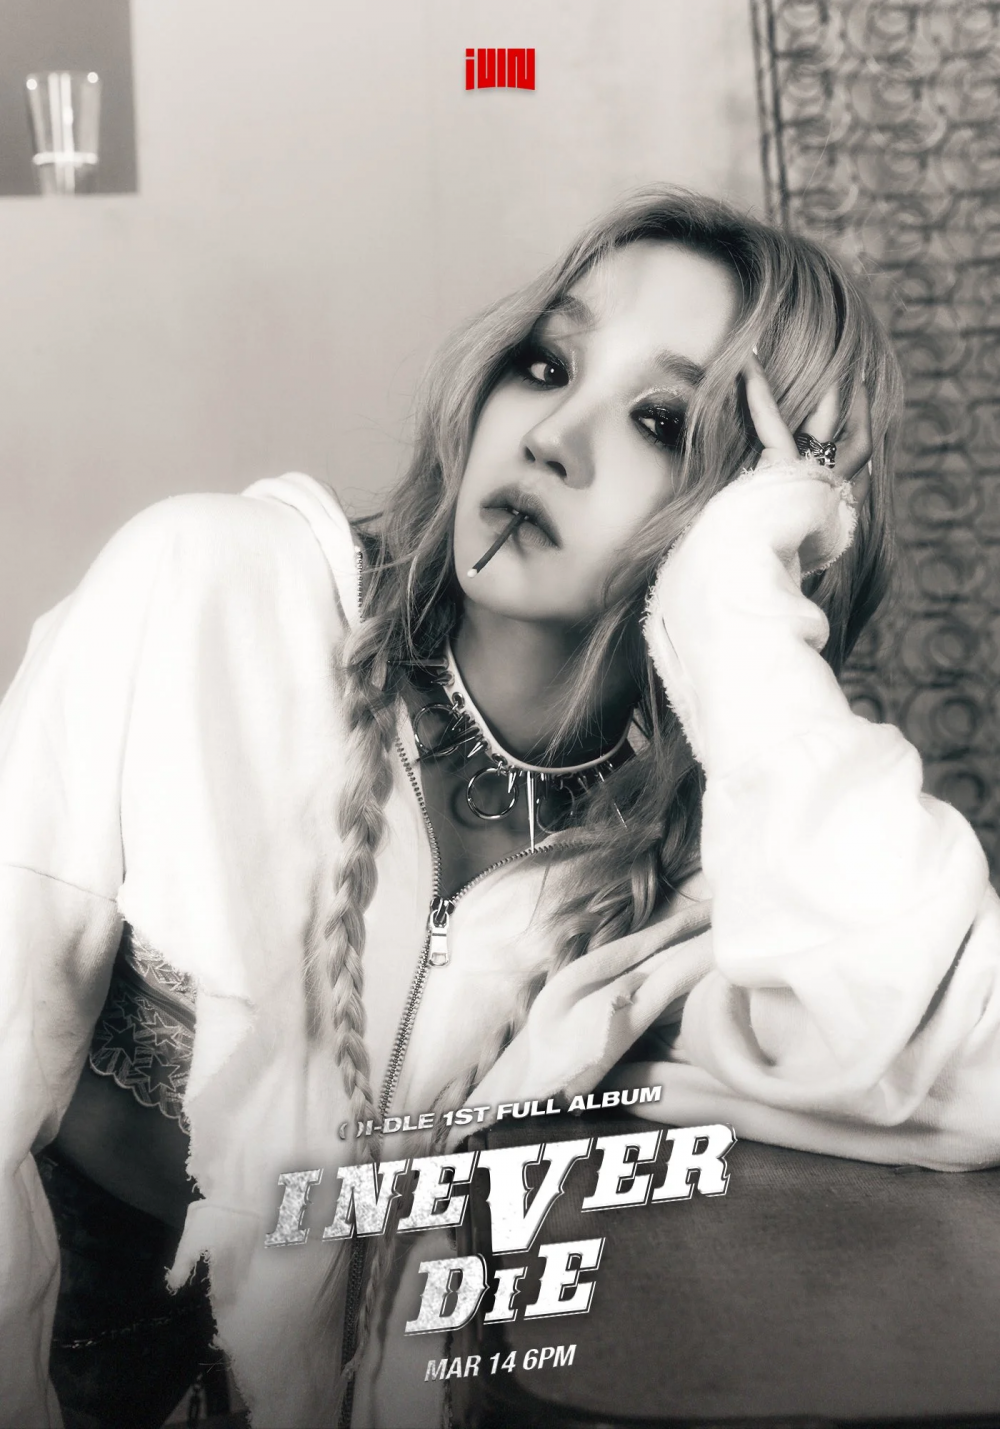 [Камбэк] (G)I-DLE альбом «I Never Die»: музыкальный клип "Never Stop Me" (лайв-версия)